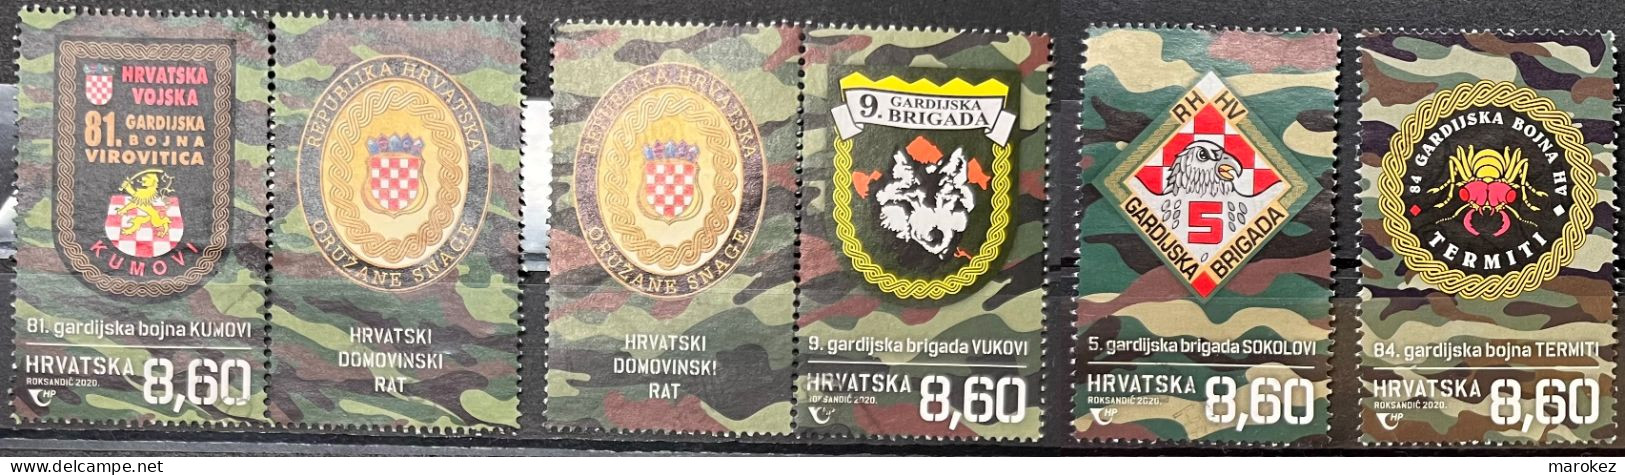 CROATIA 2020 Croatian War - Guard Brigades And Guard Battalions Postally Used Set MICHEL # 1454,1455,1456,1457 - Croazia